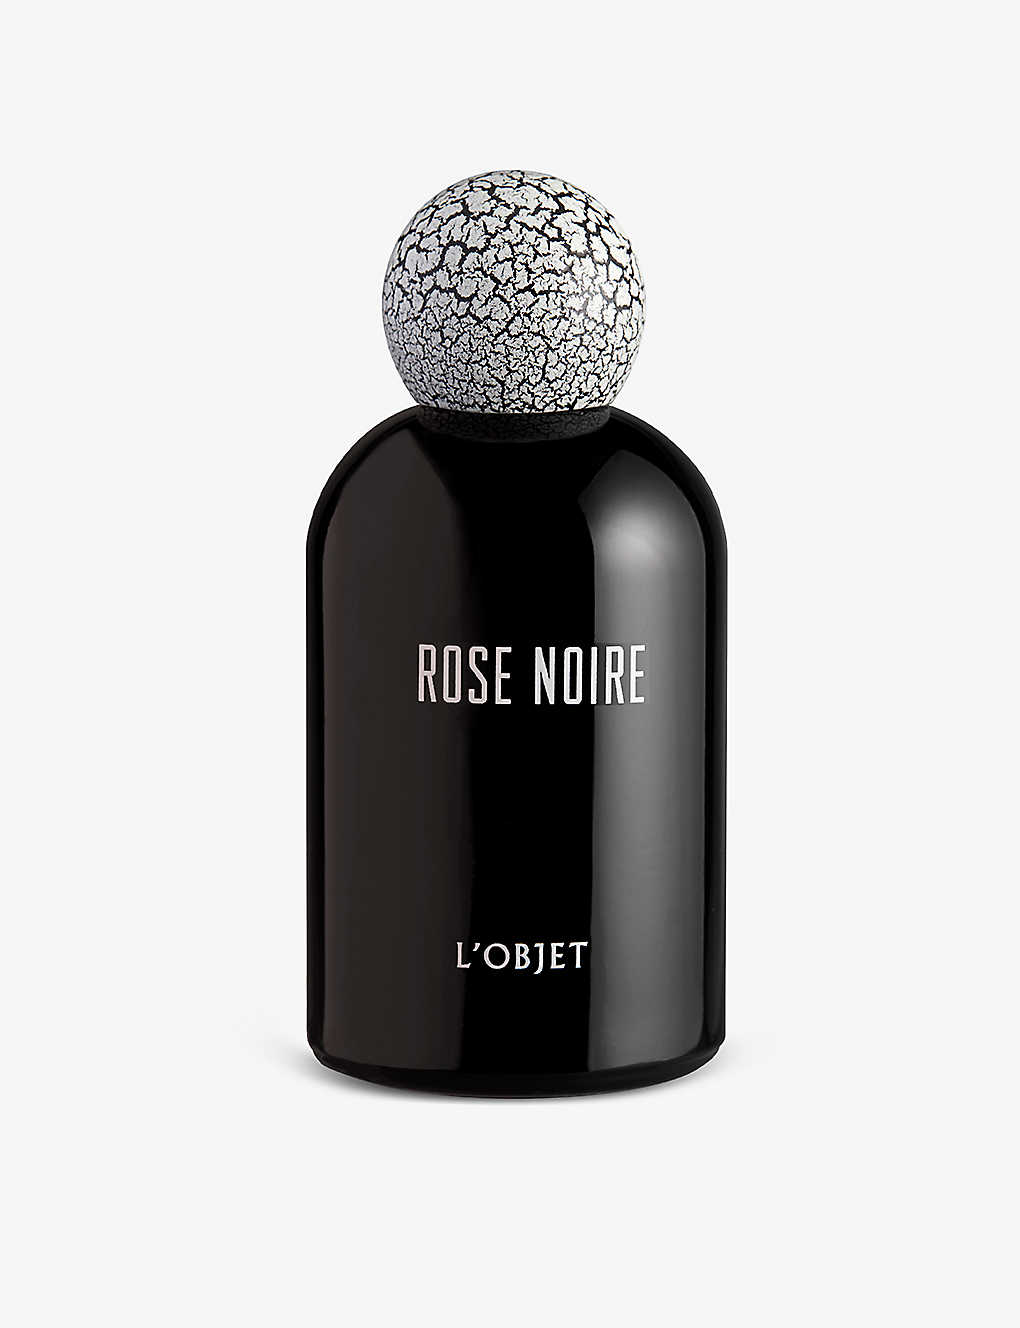 L'objet Lobjet Rose Noire Eau De Parfum 100ml